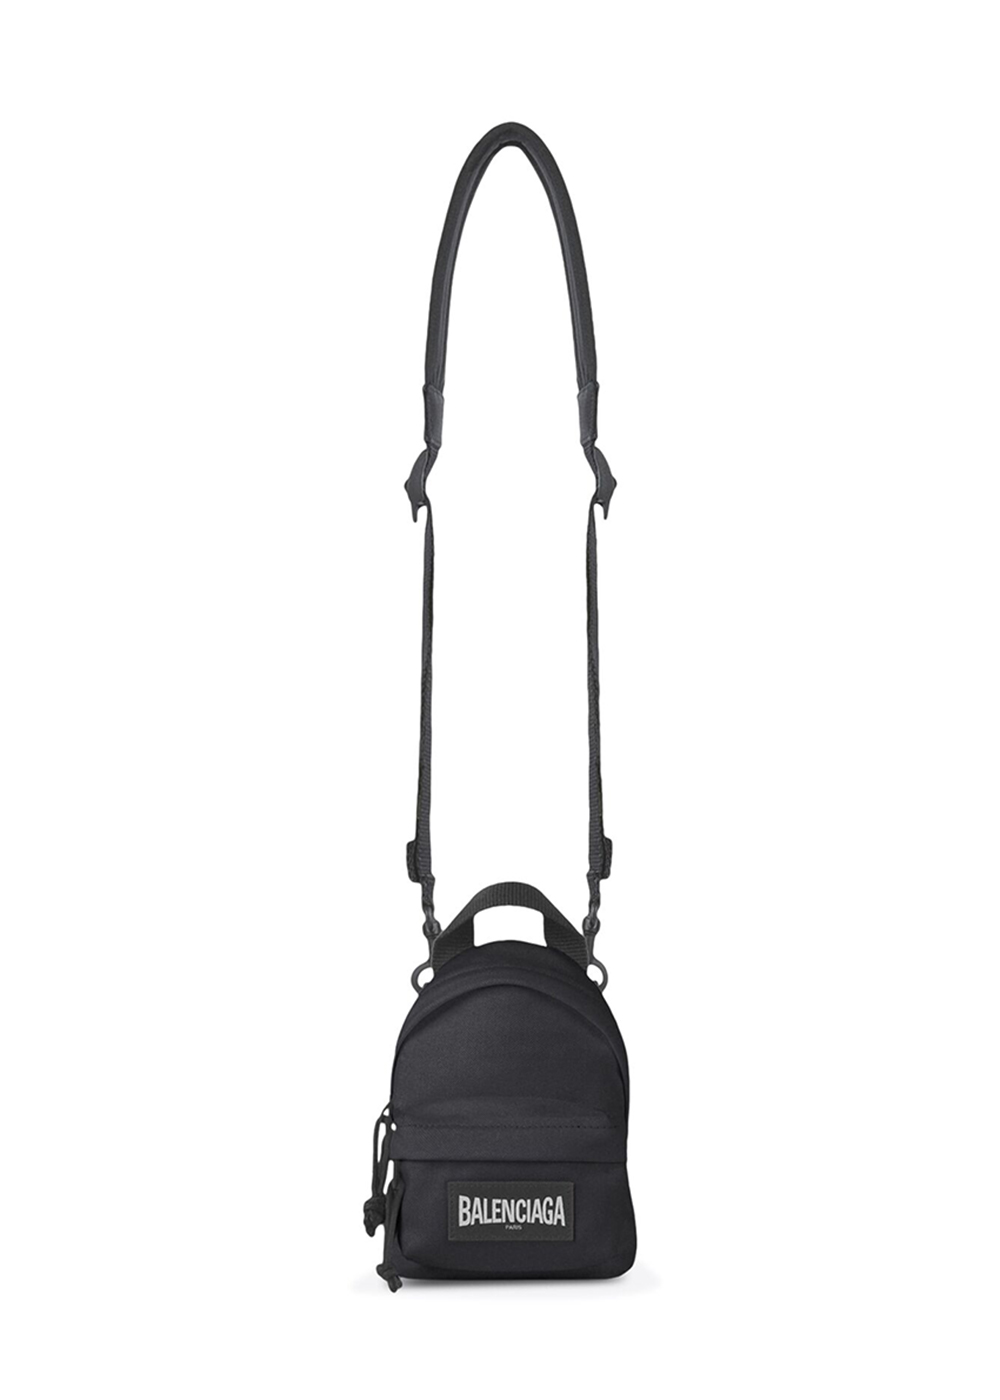 Lezard Charly Bag  Mens Bags  Balenciaga Backpack with logo  IetpShops